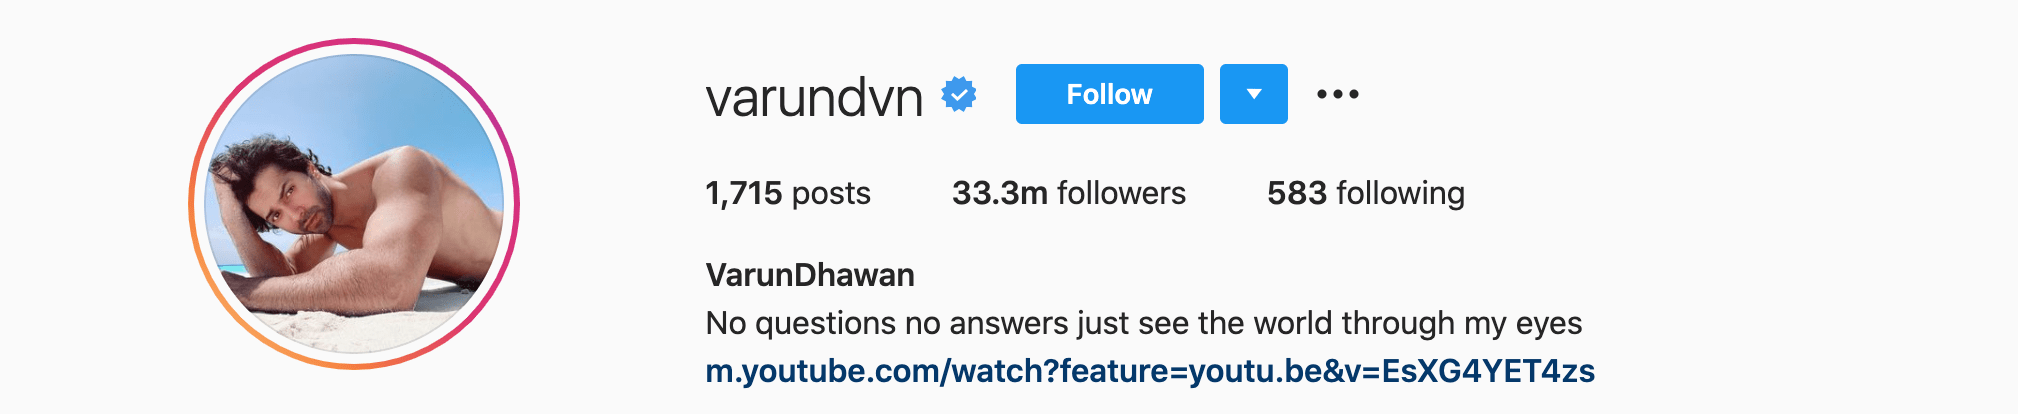 Top Instagram Influencers - VARUN DHAWAN